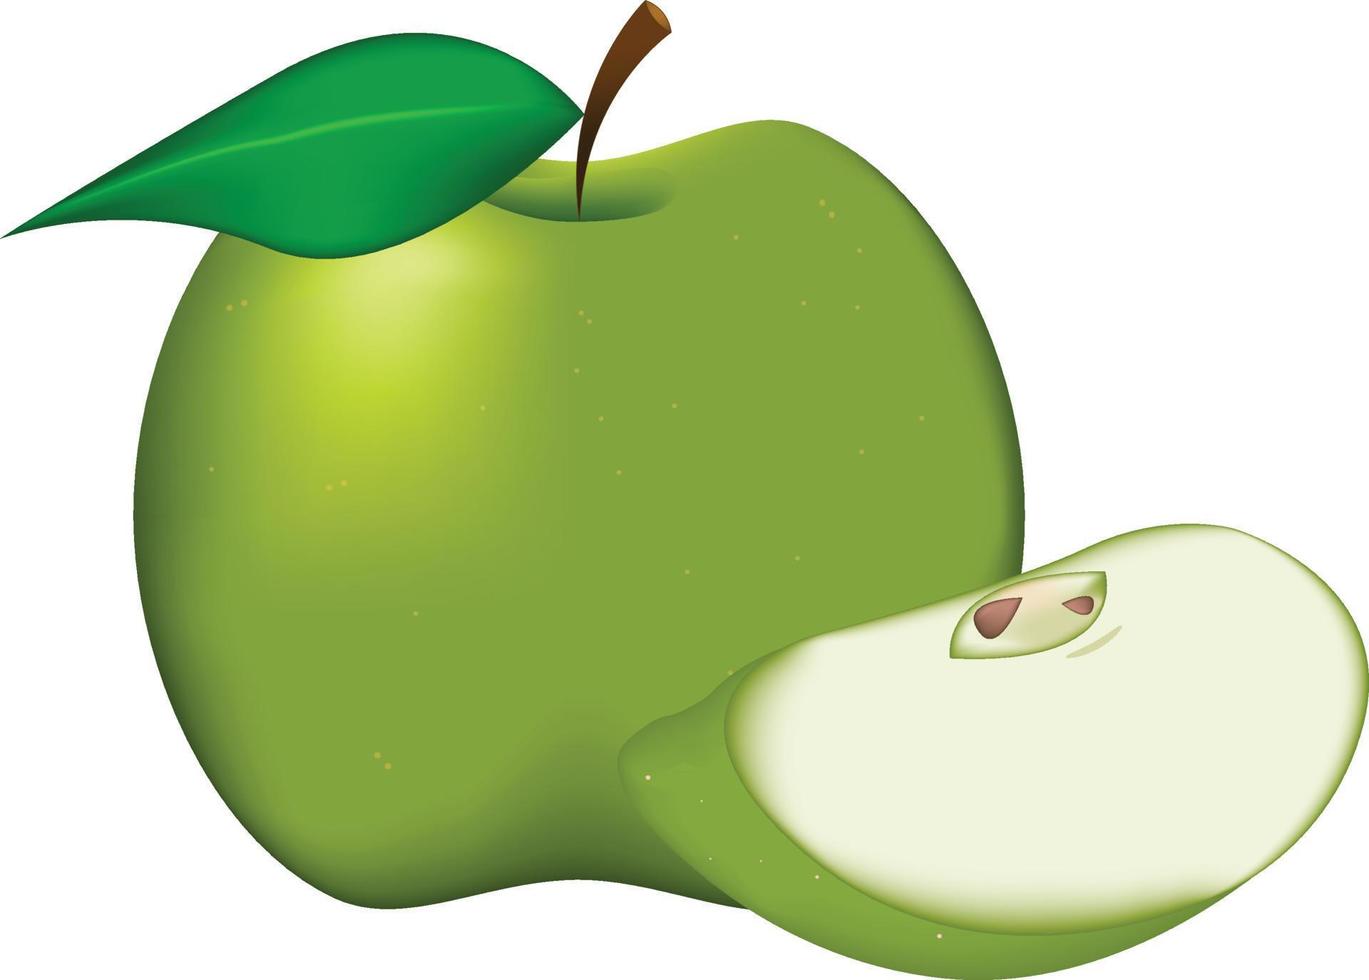 maçãs verdes realistas isoladas na arte do ícone de vetor de fundo branco.